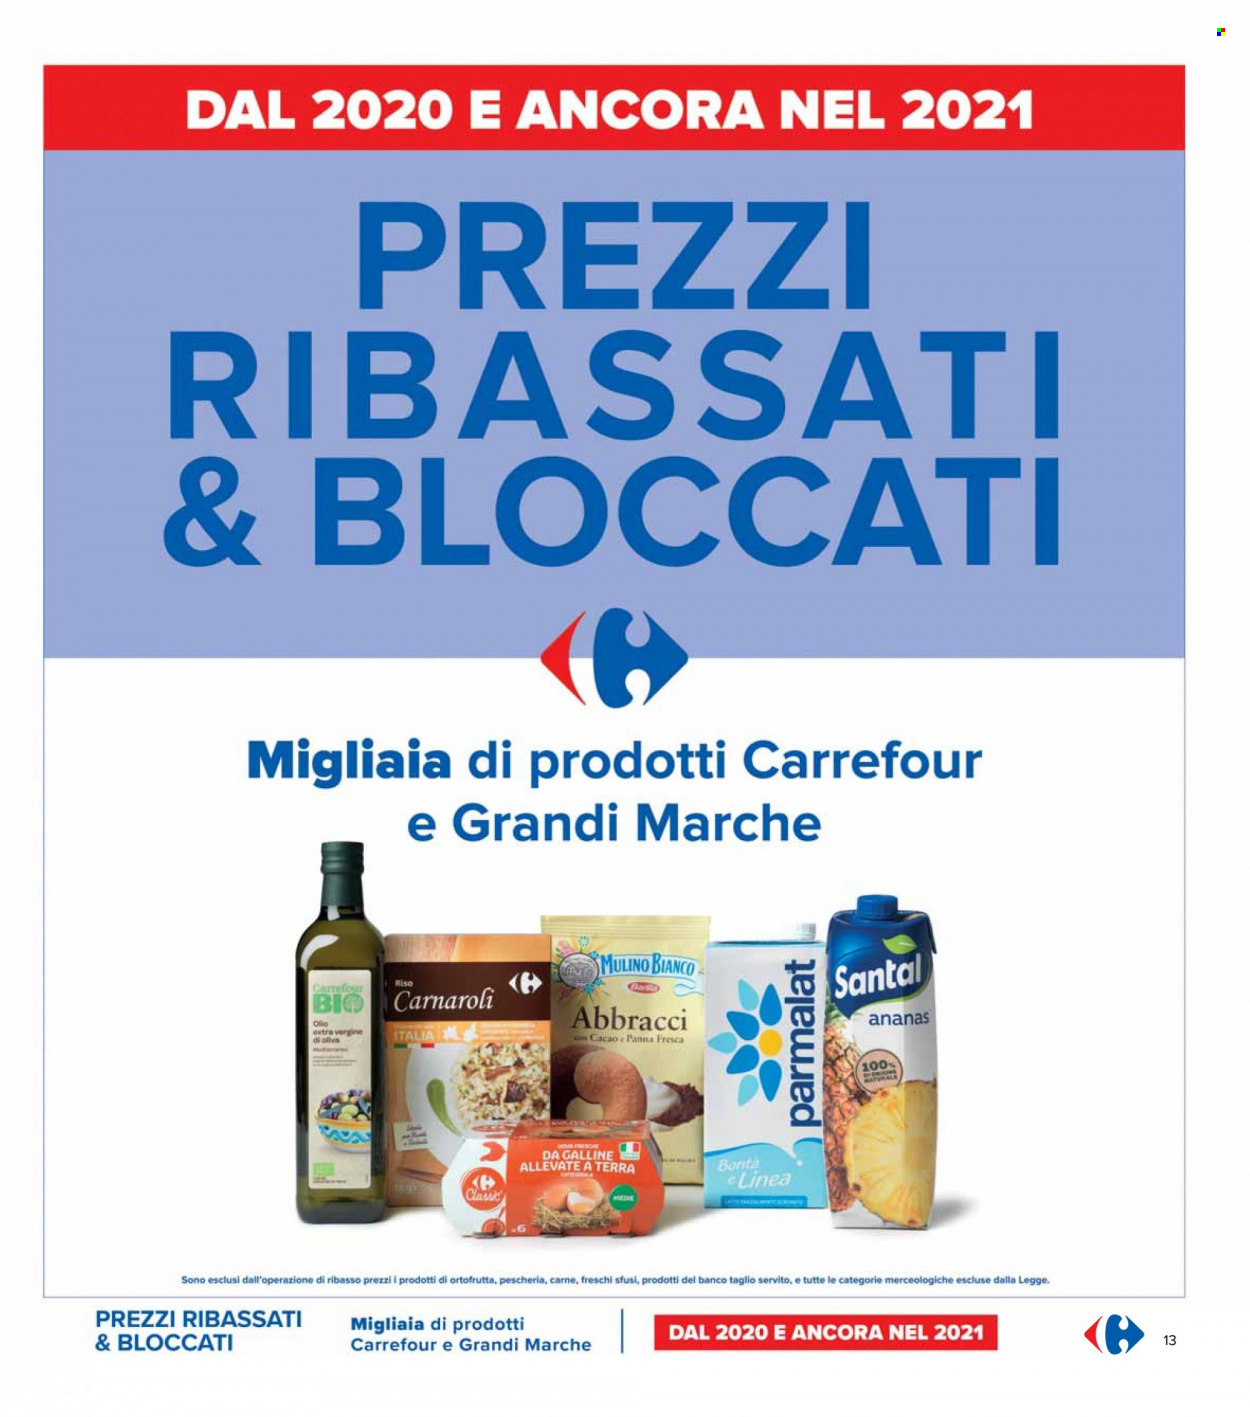 Volantino Carrefour - 6.9.2021 - 15.9.2021.